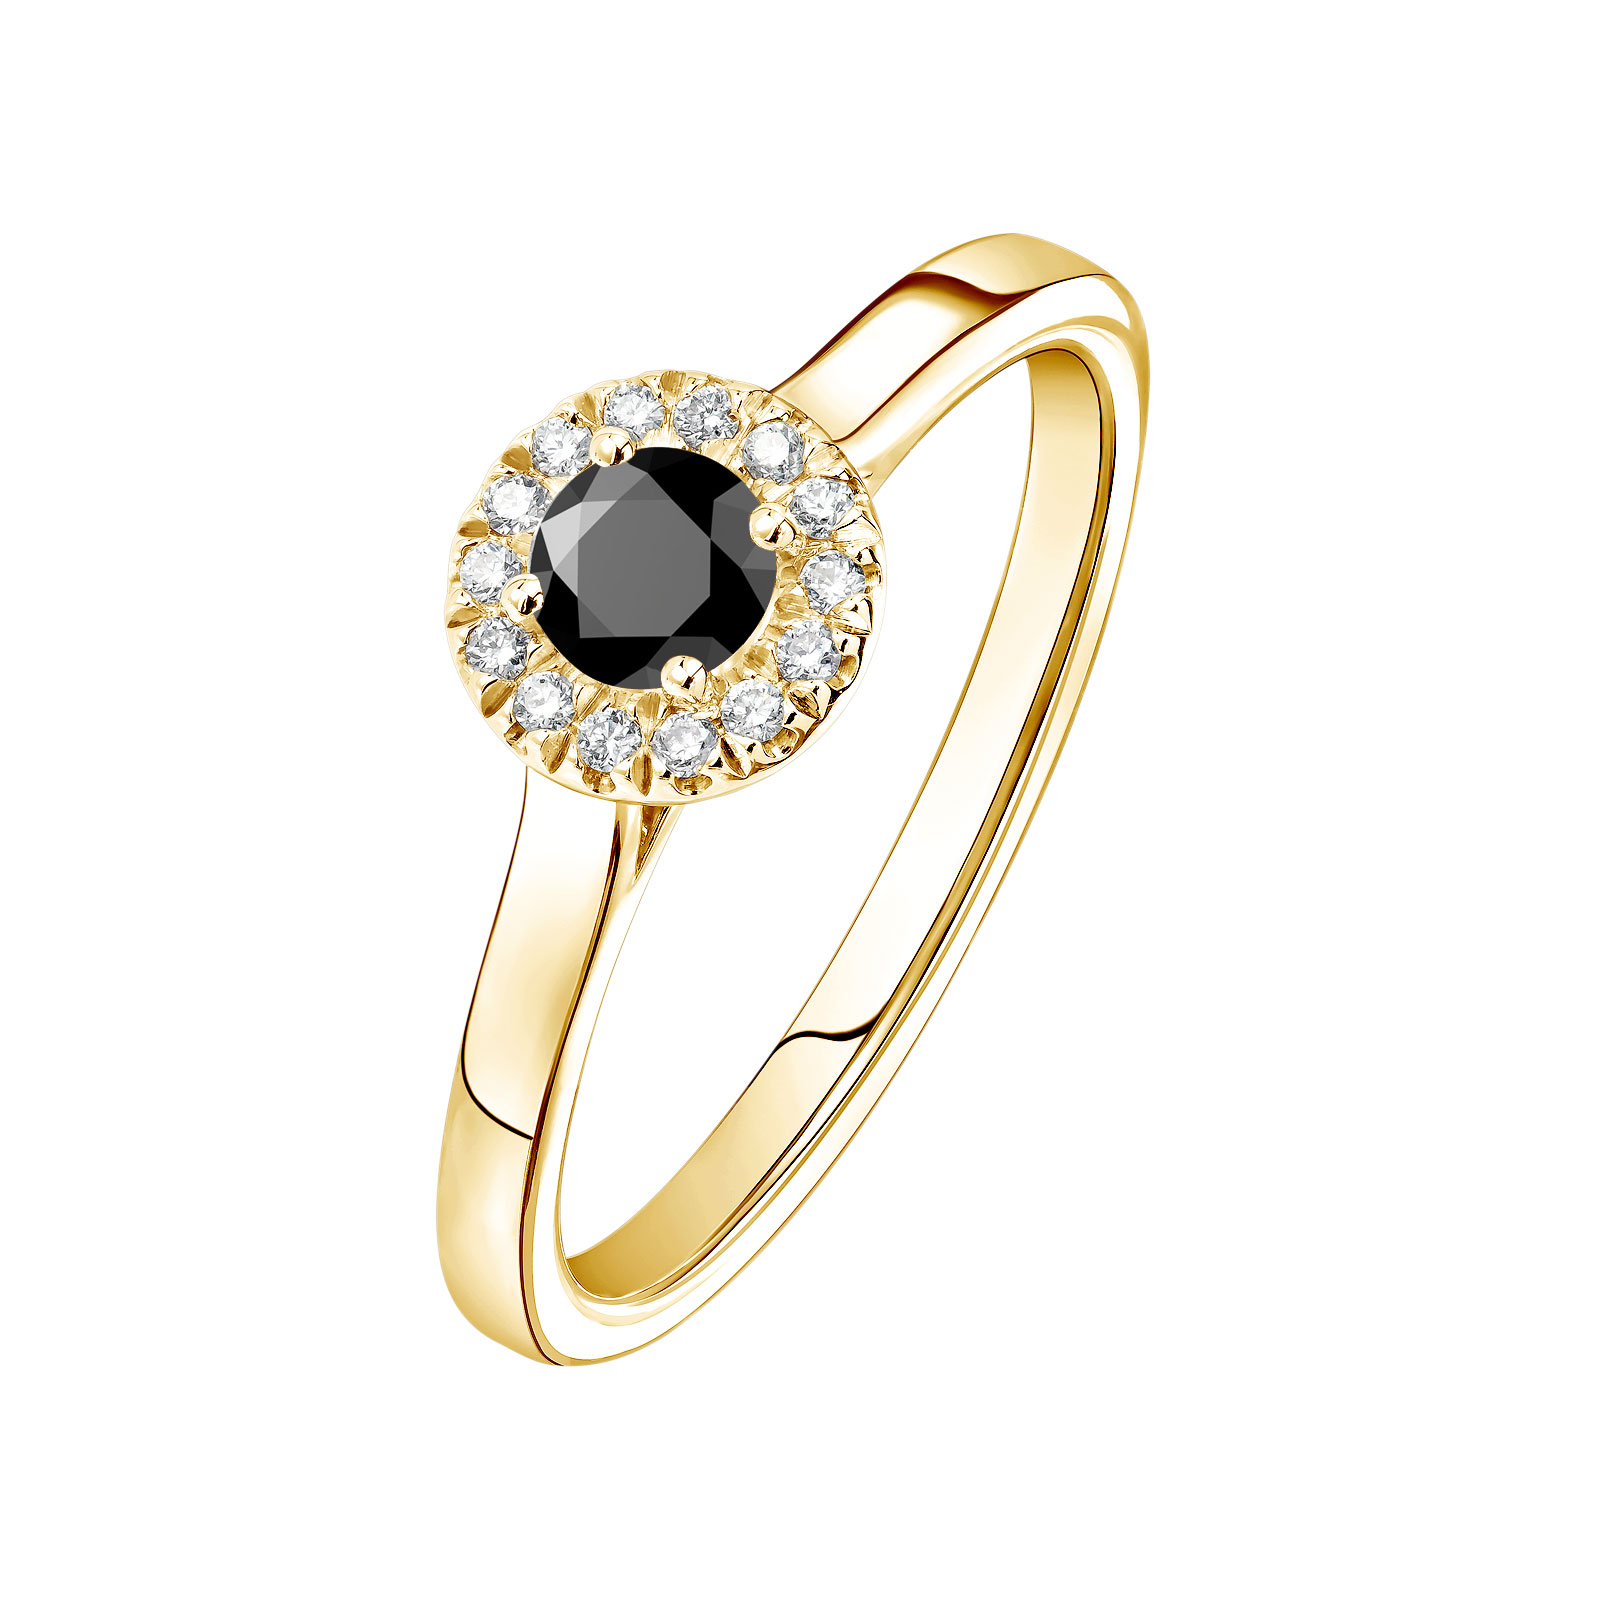 Bague Or jaune Spinelle noir et diamants Rétromantique S 1